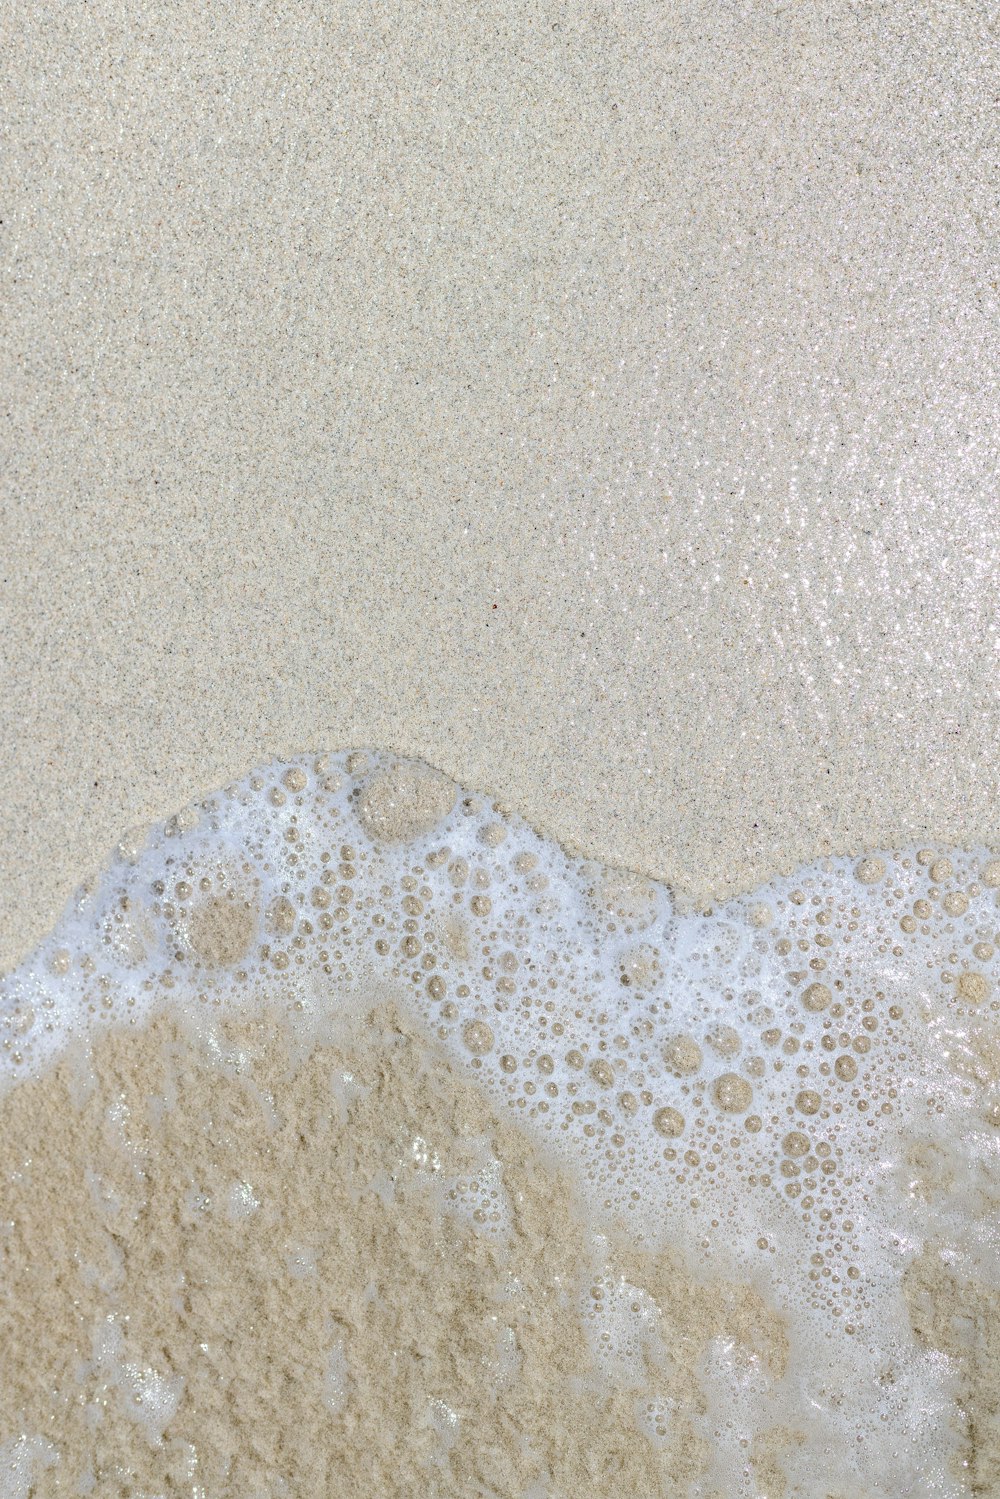 파도가 해안으로 들어오는 모래 해변